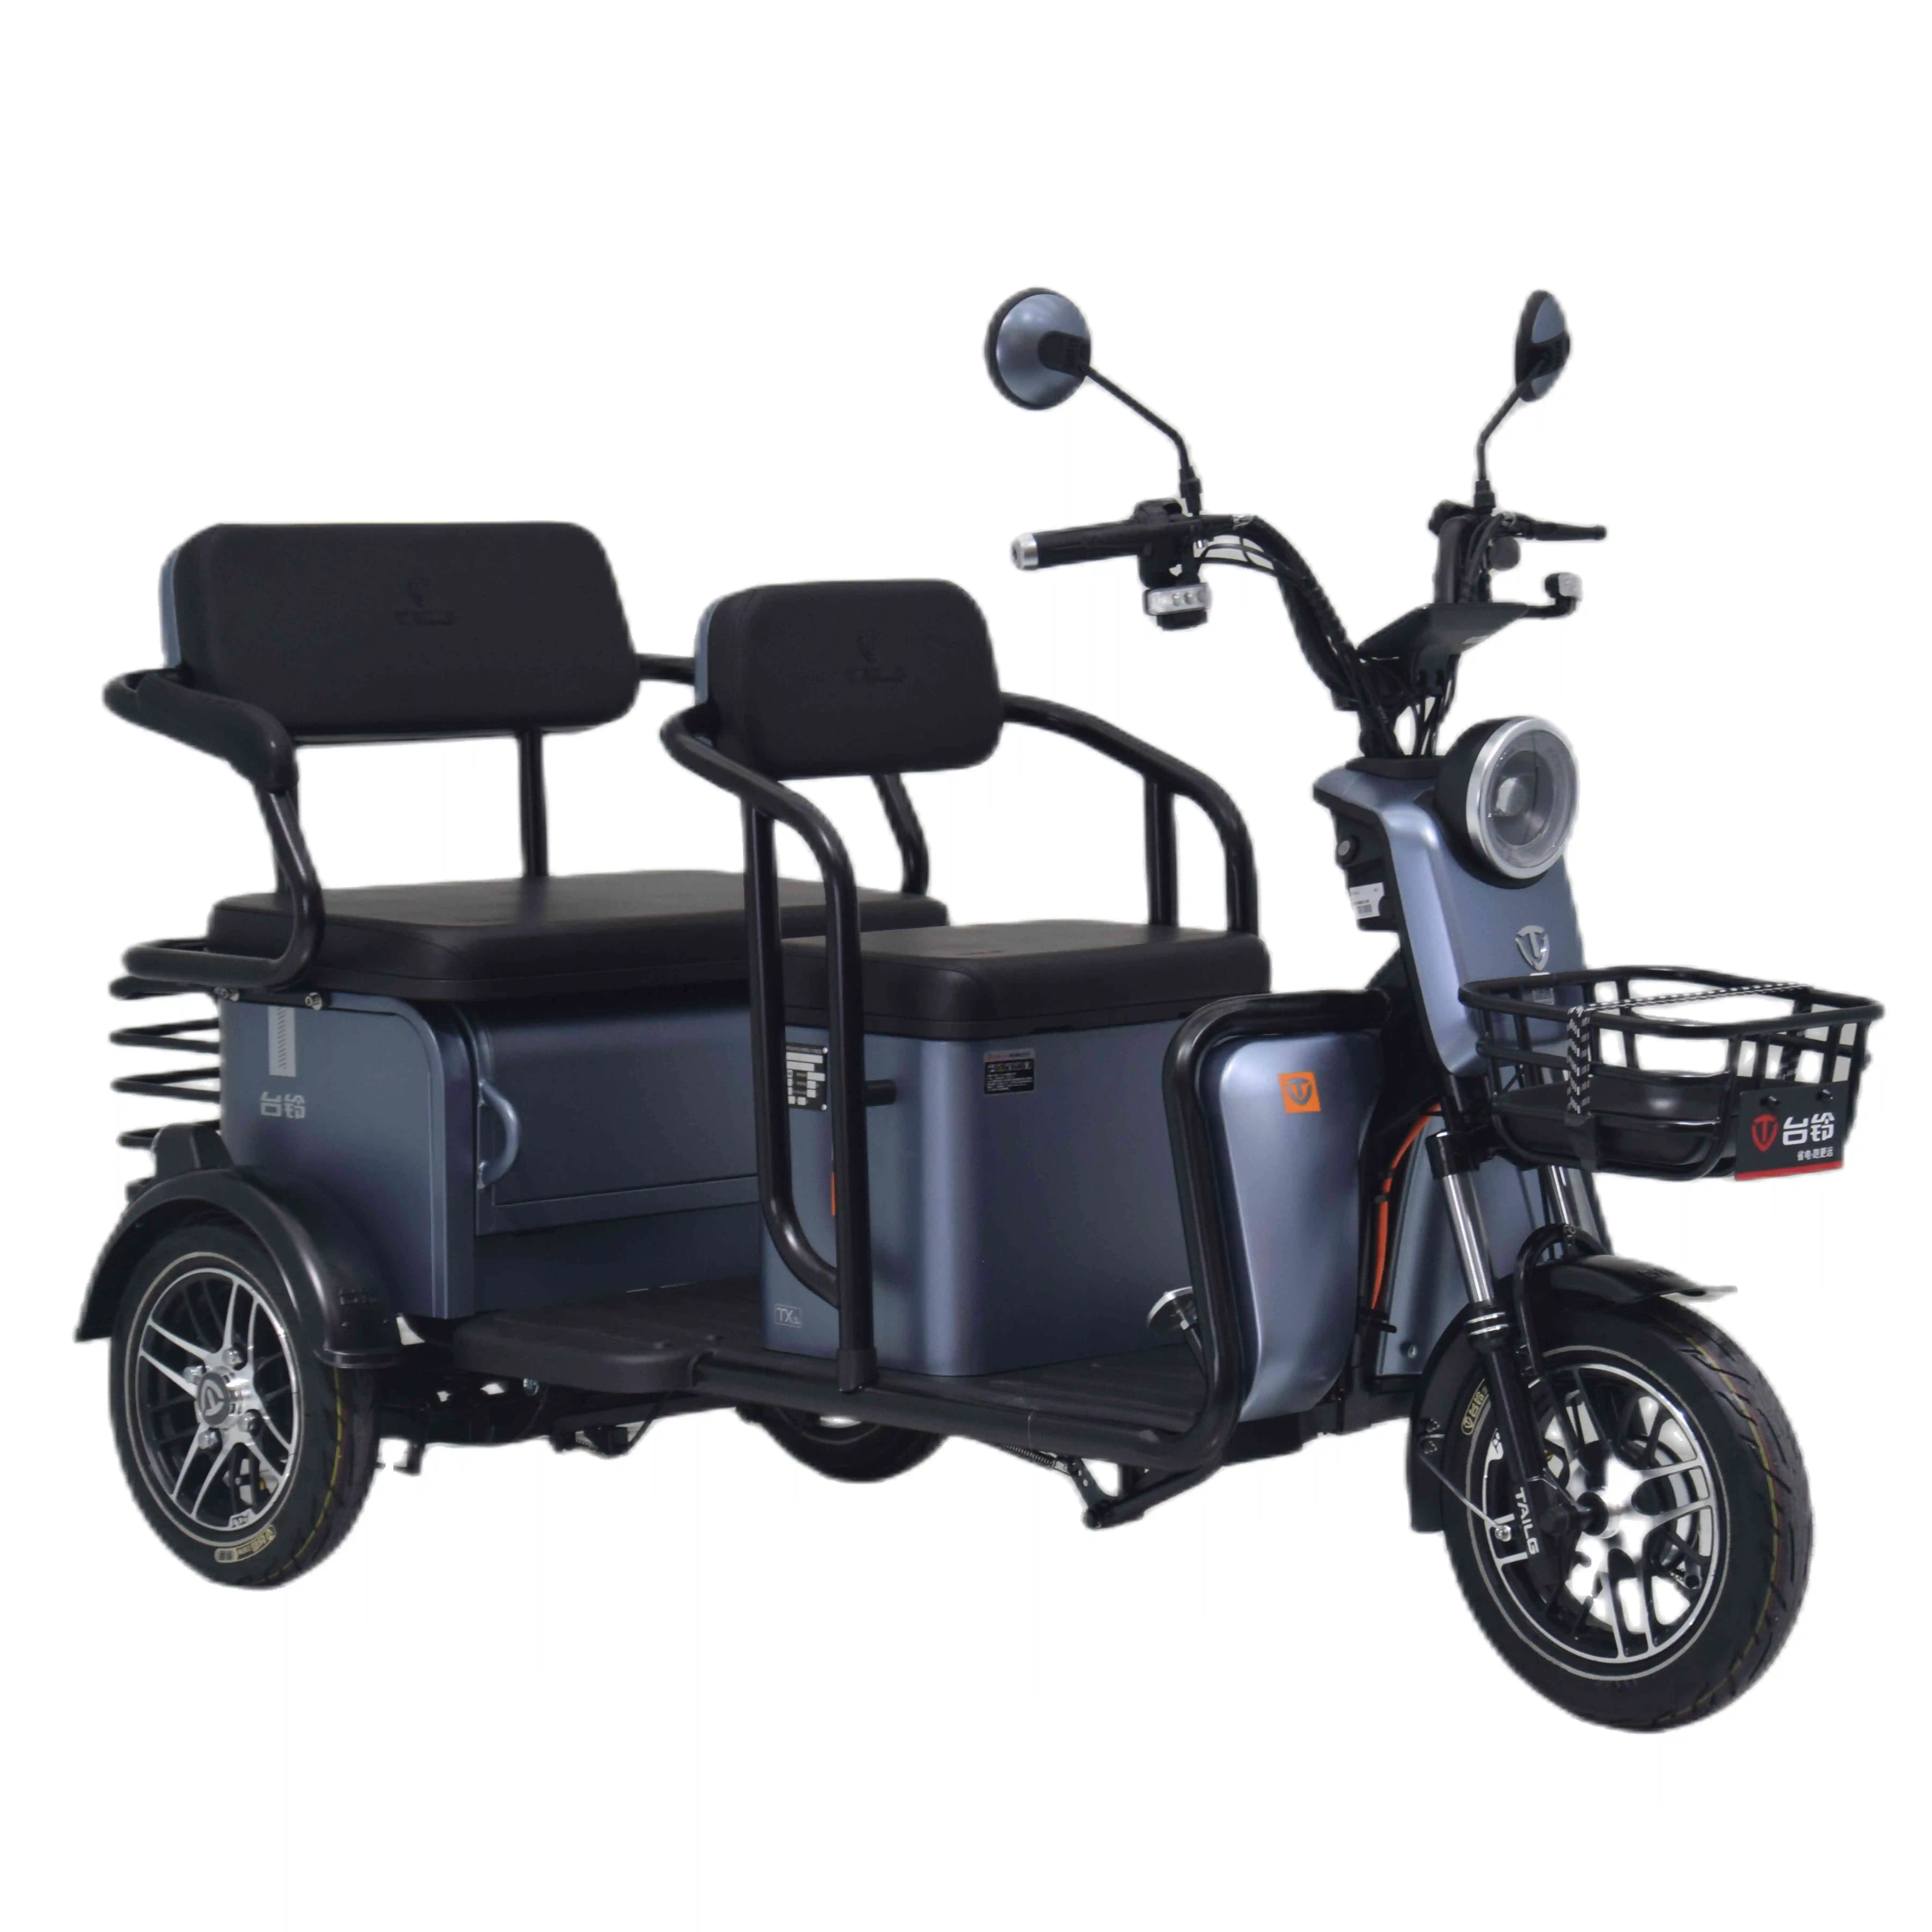 Tailg China Charge Power Mobility Scooter Três Rodas Comprar Preço Triciclo elétrico barato para adultos com deficiência